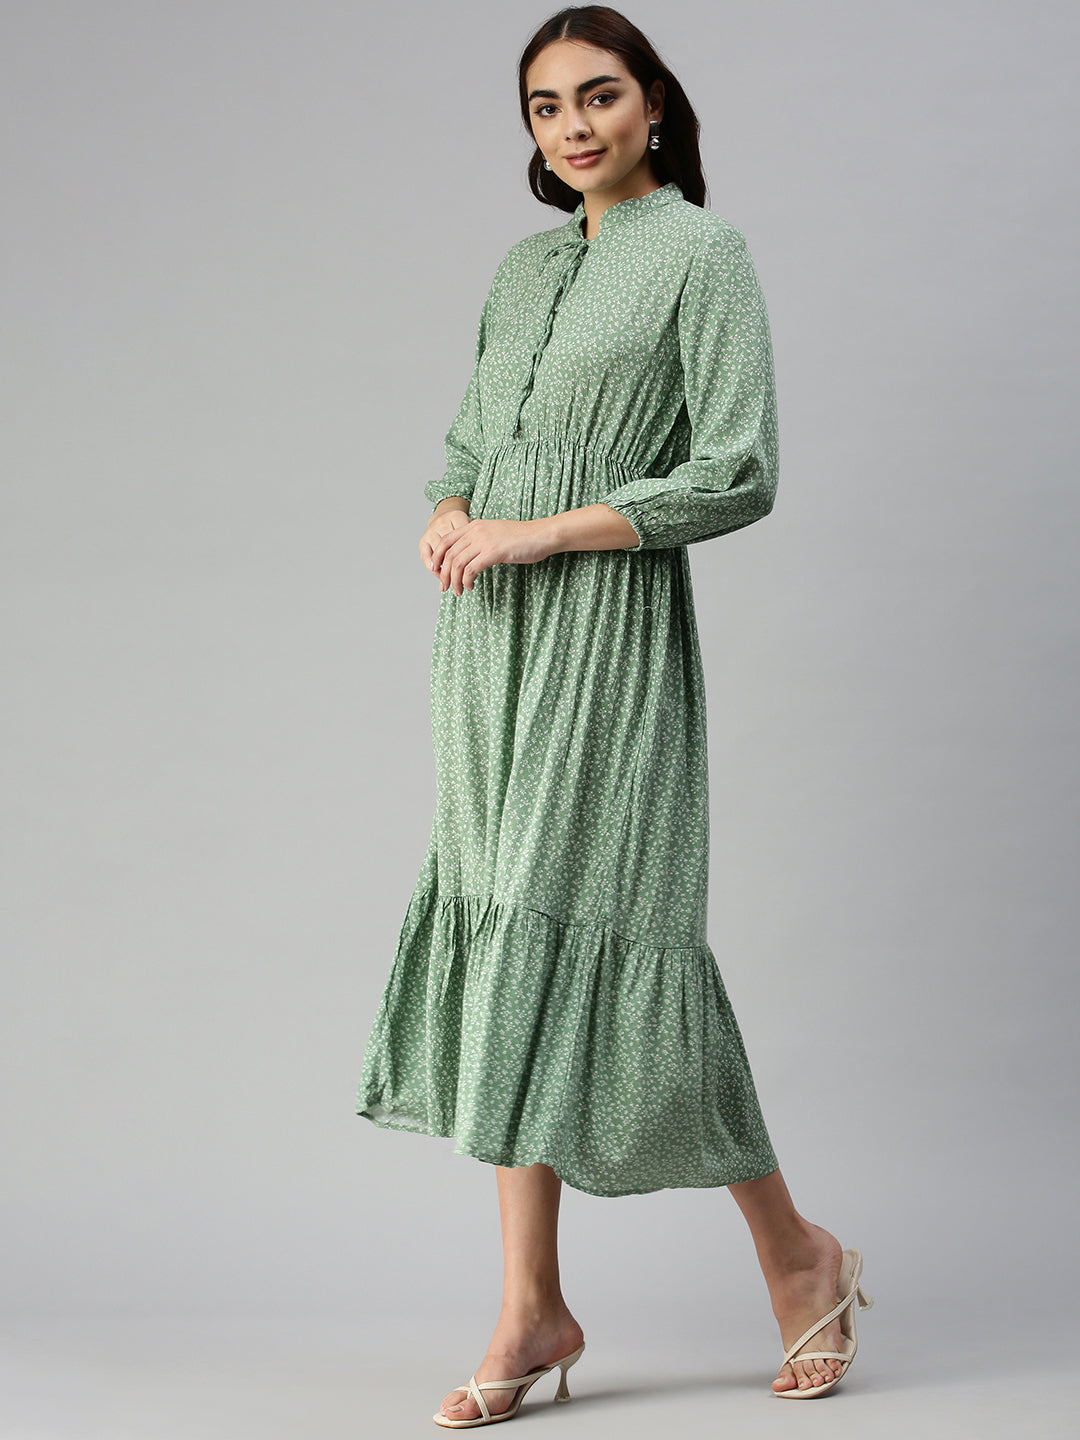 Women's Green Floral A-Line Dress